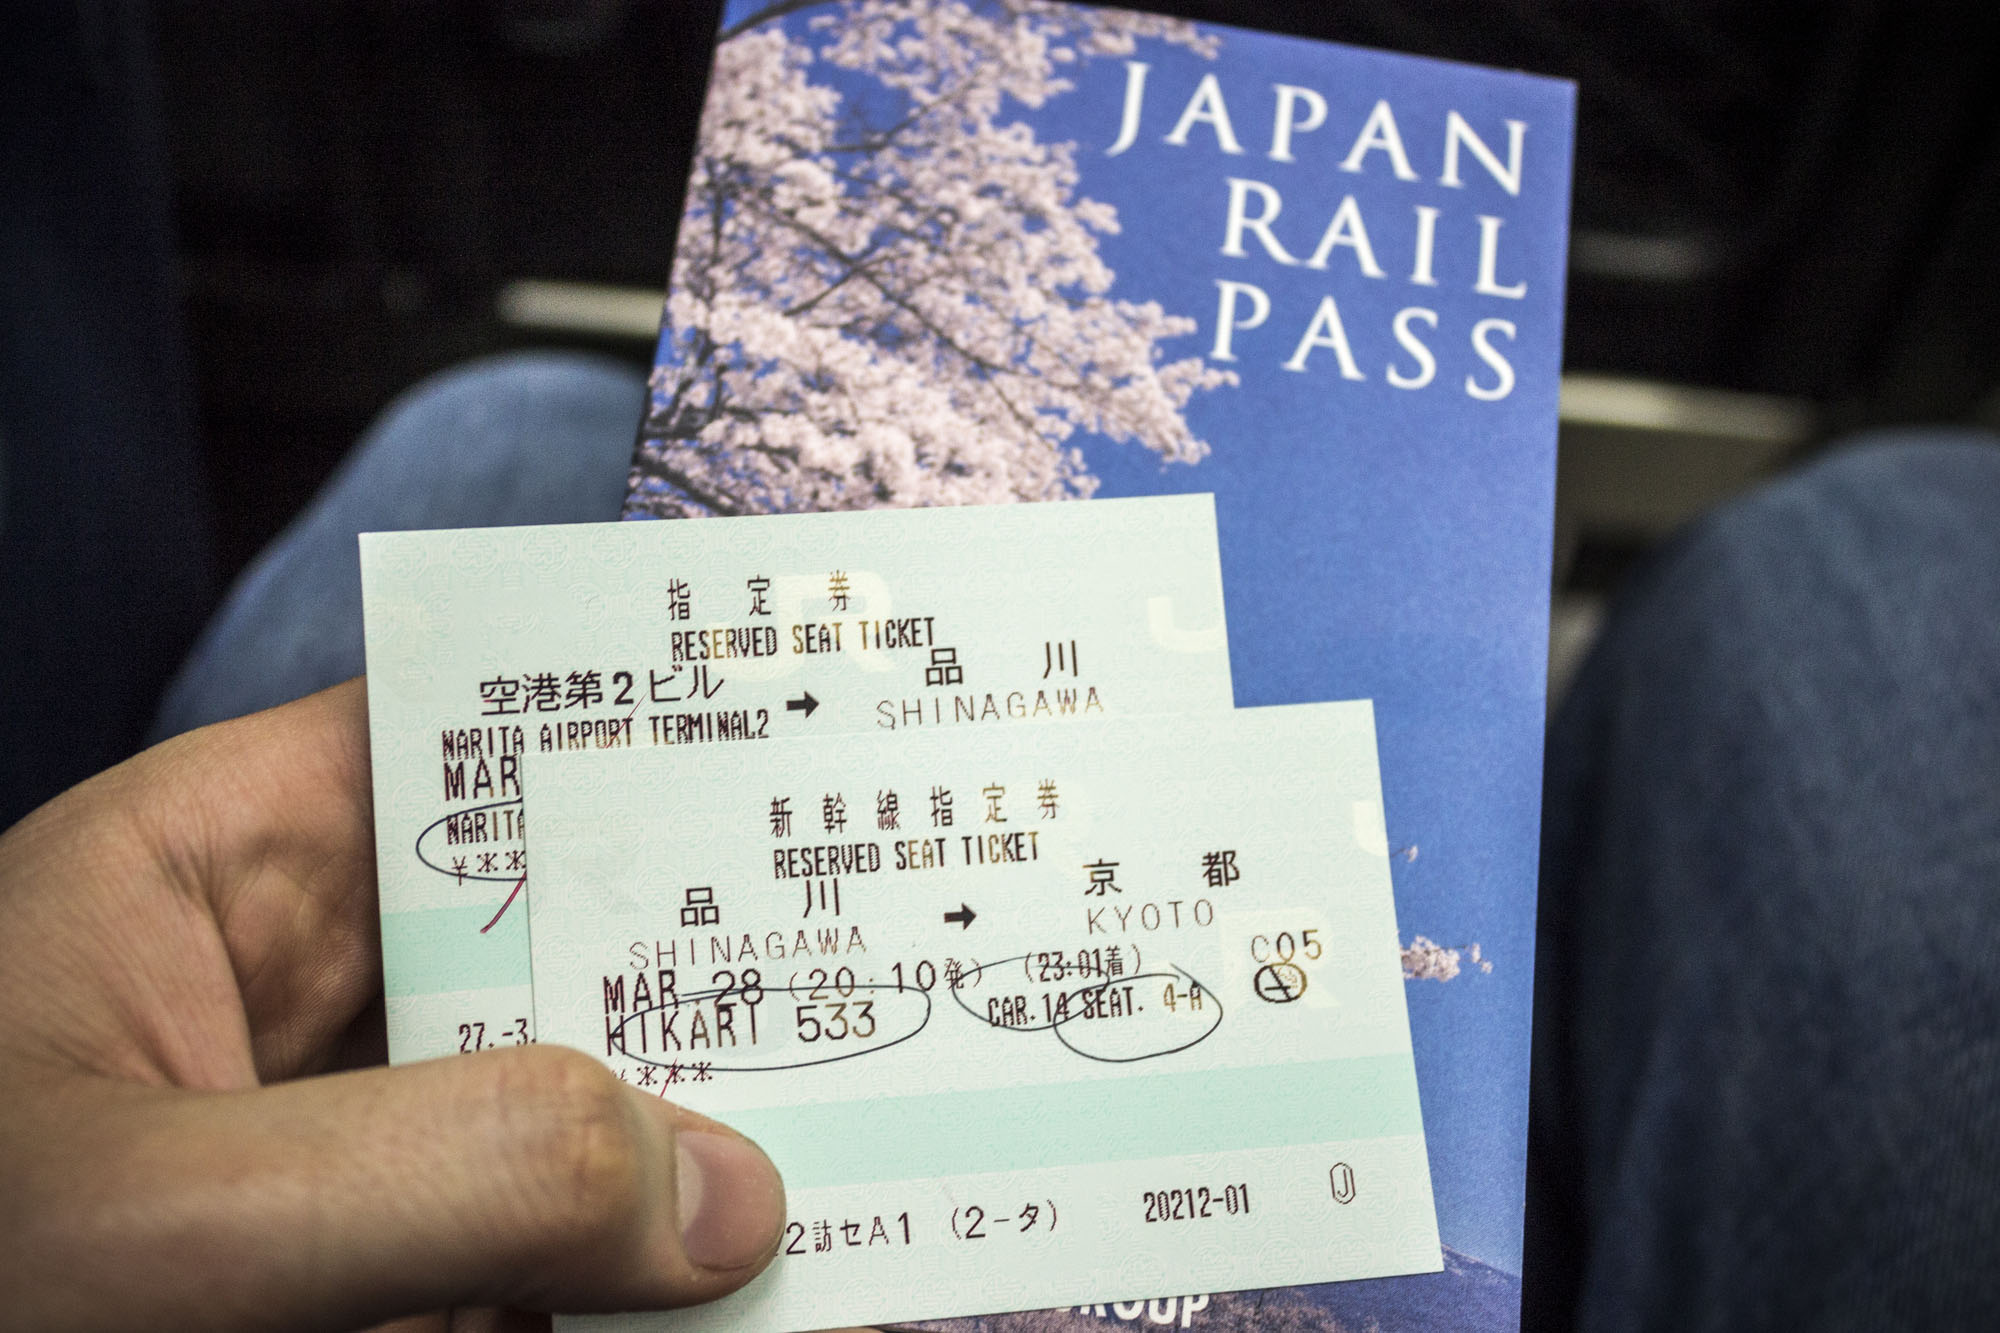 Der Japan Rail Pass ermöglicht kostenlose Sitzreservationen.